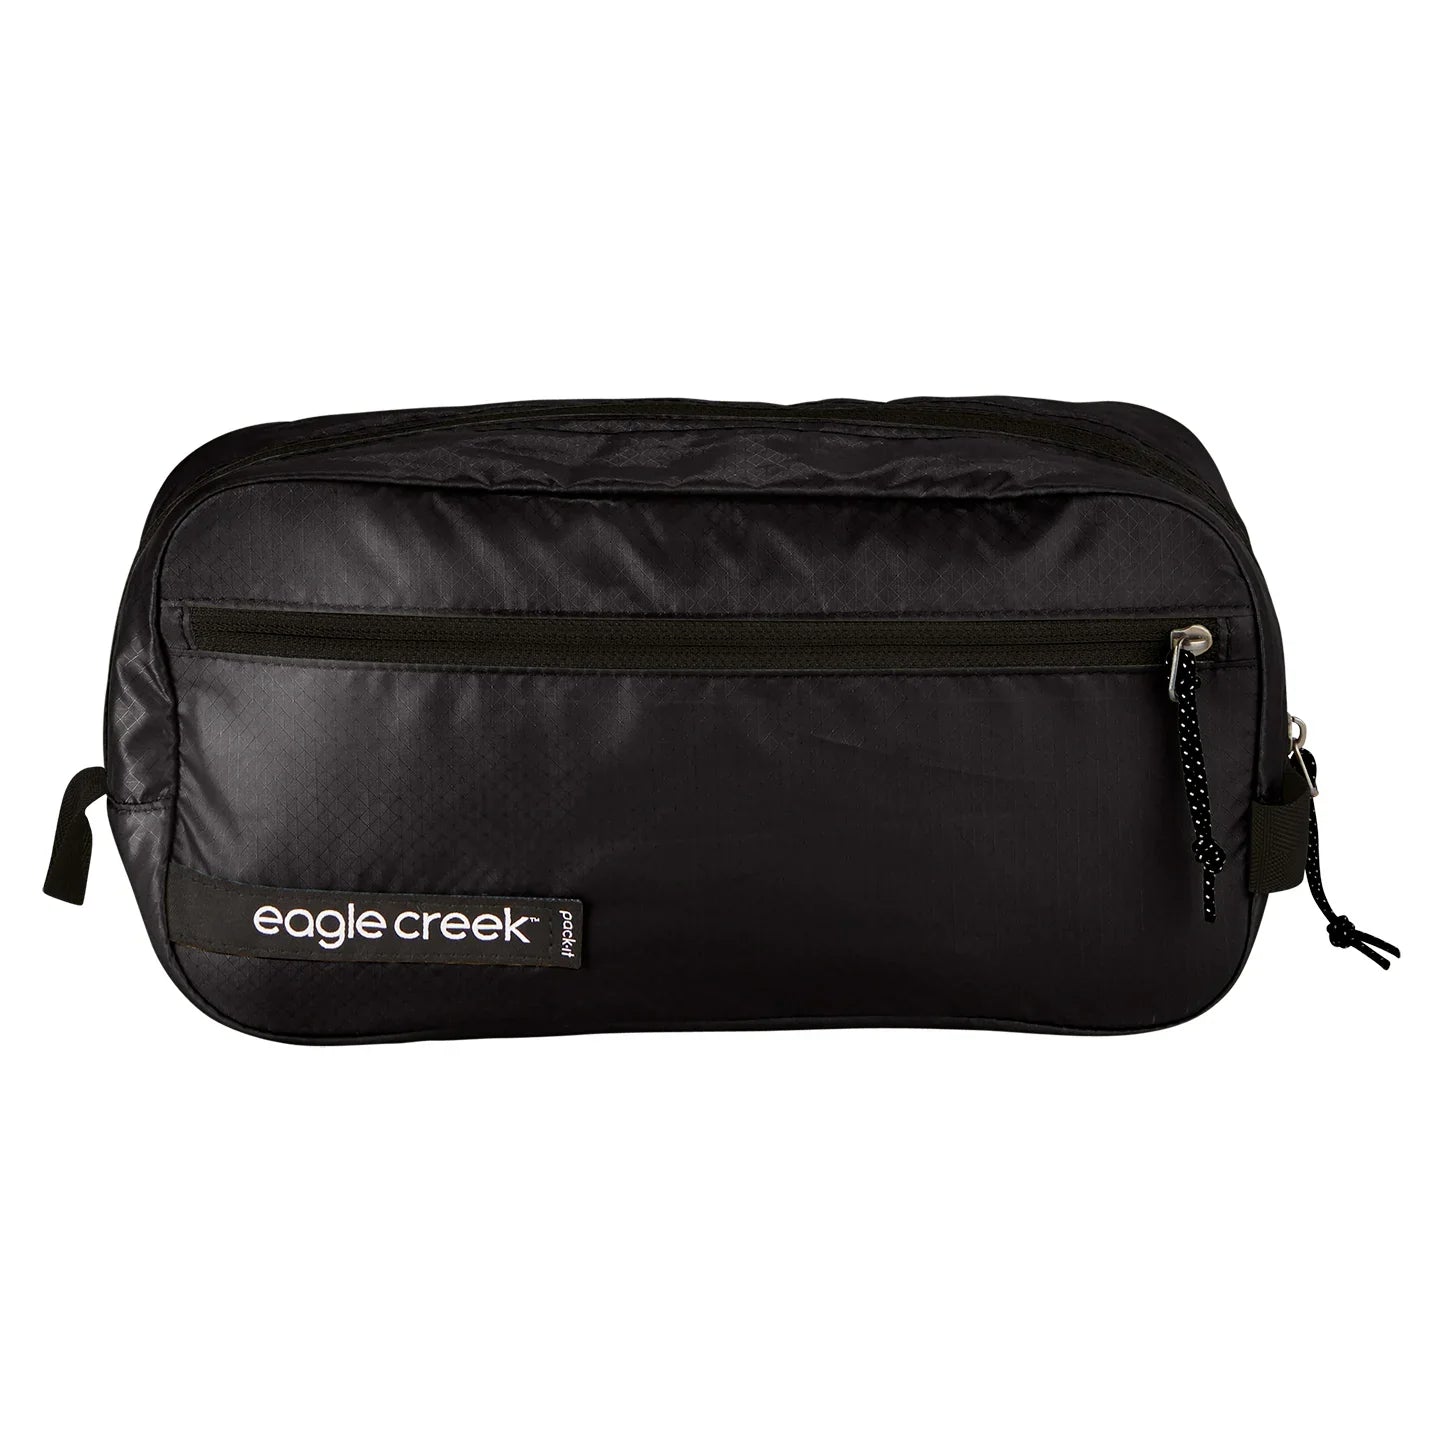 Eagle Creek Pack-It Isolate Quick Trip Kulturbeutel S 25 cm - az blue/grey